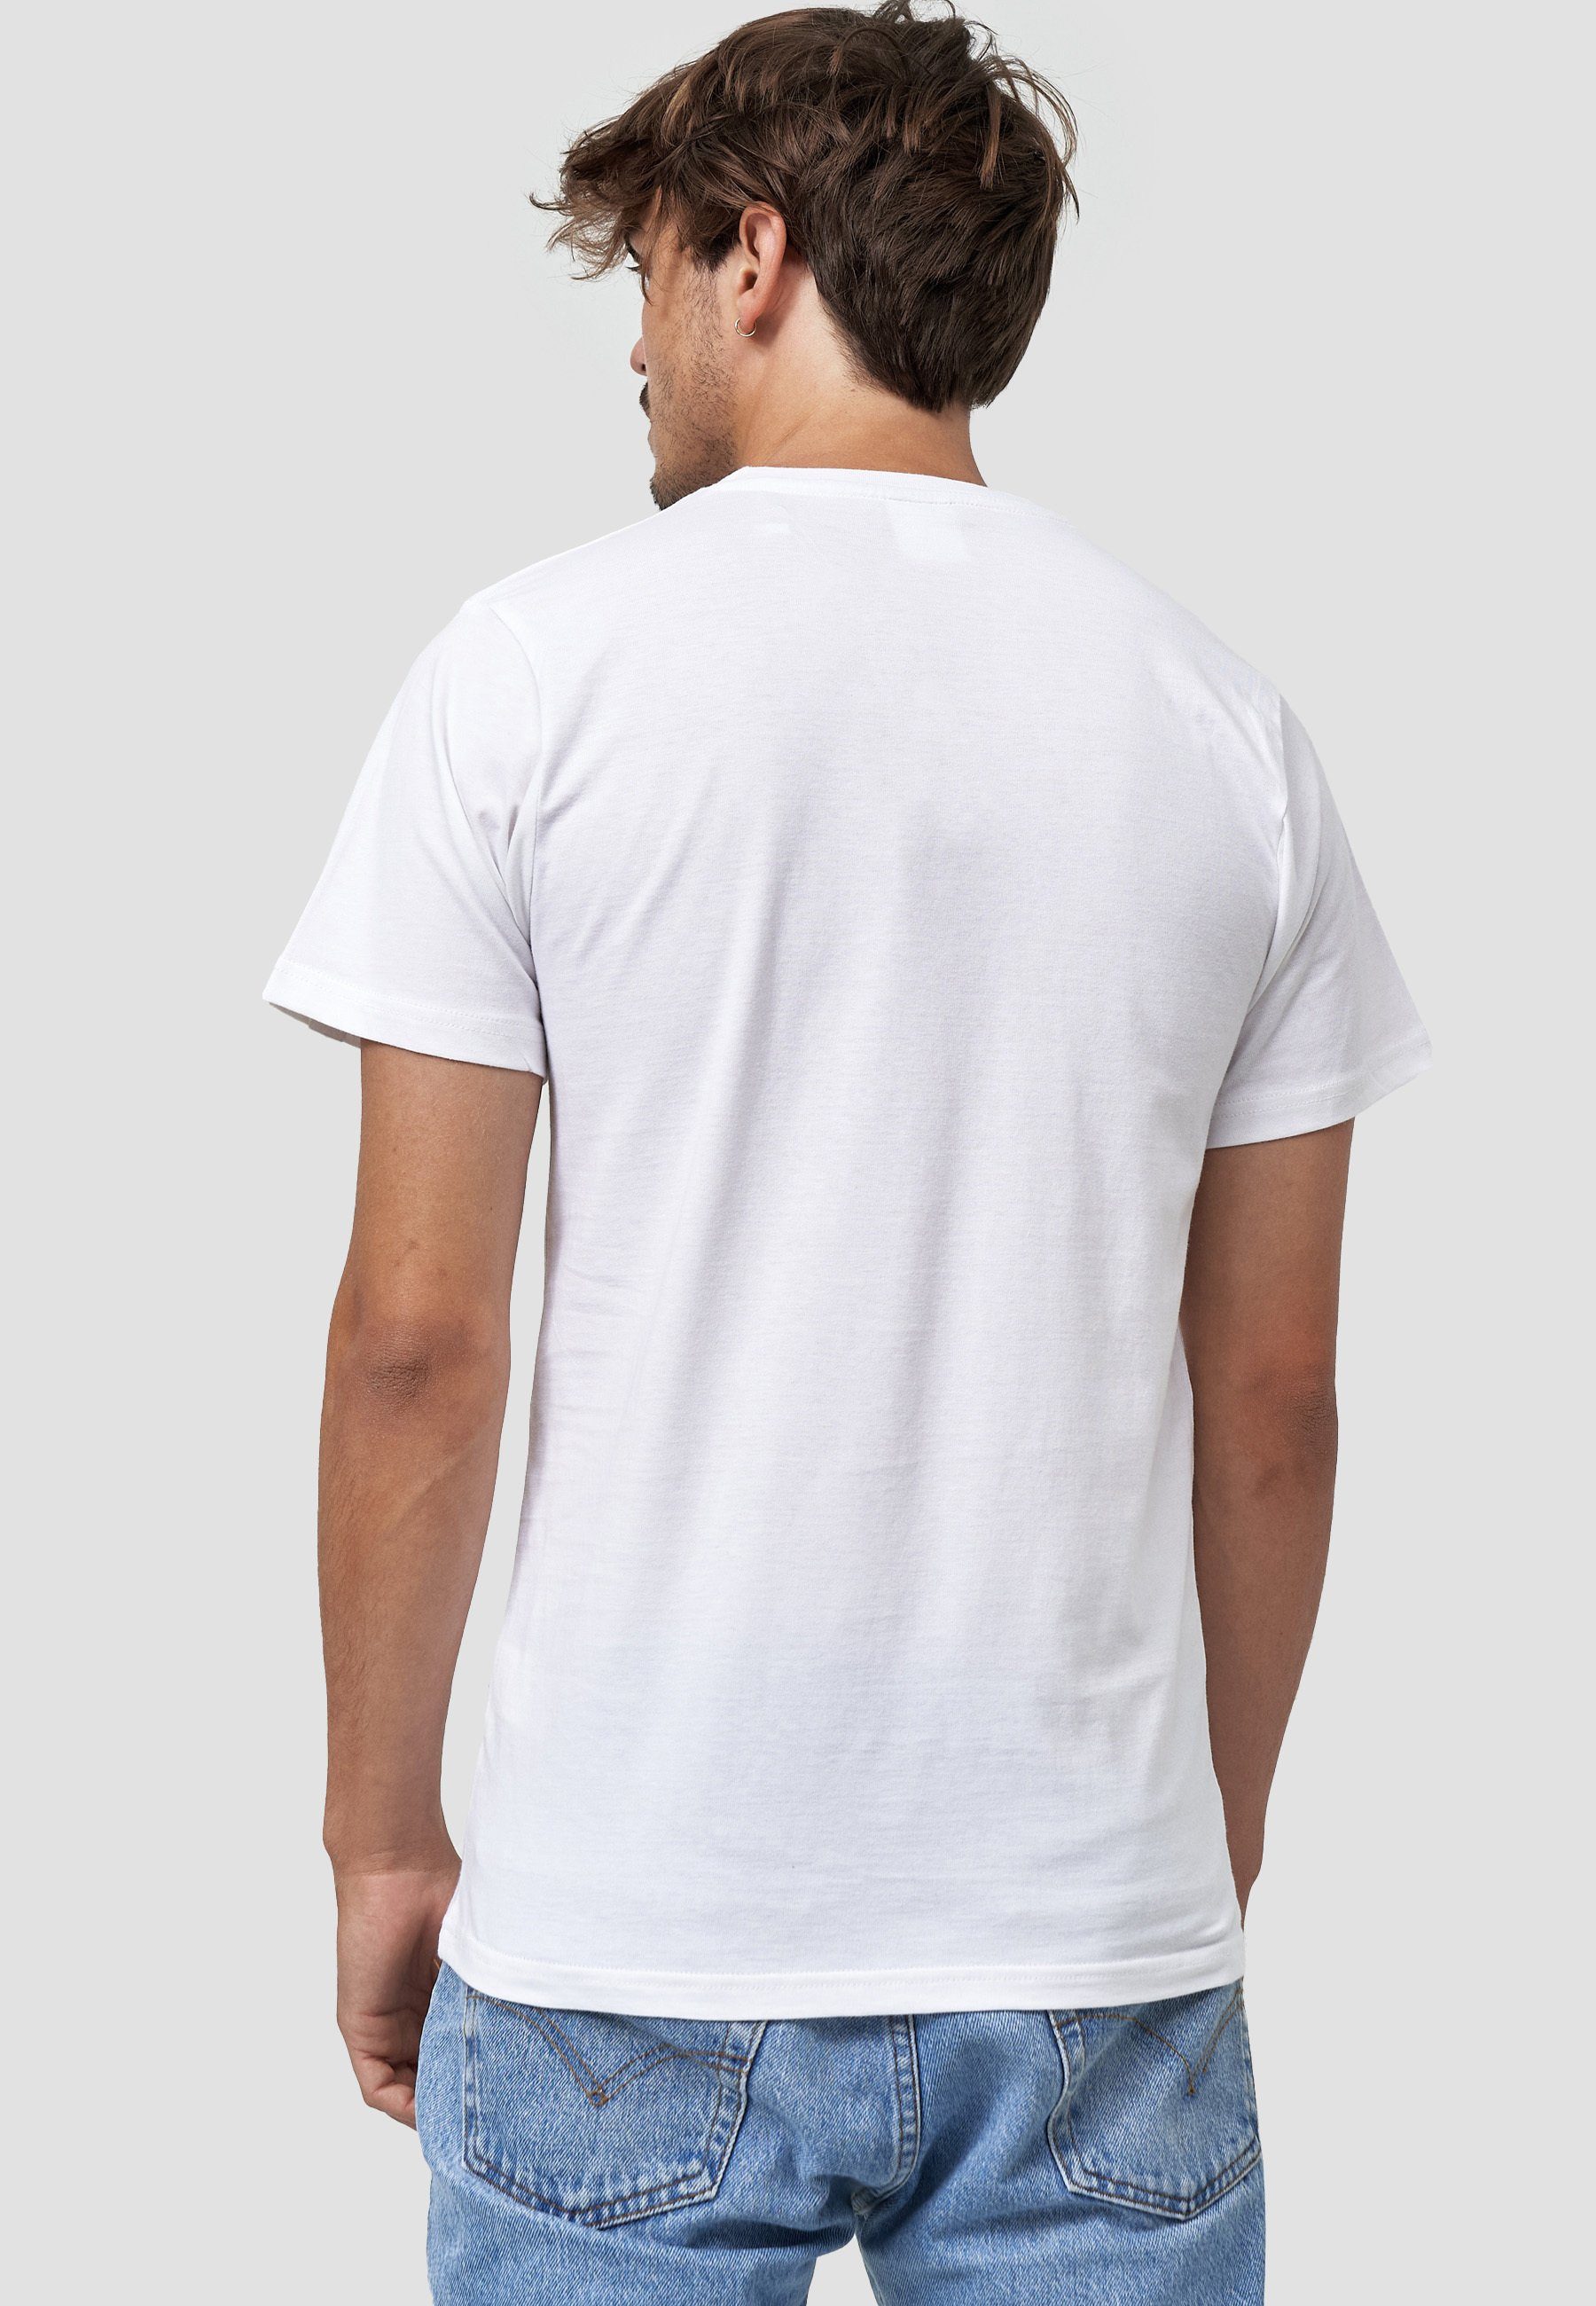 MIKON GOTS T-Shirt Bio-Baumwolle Weiß Fliege zertifizierte